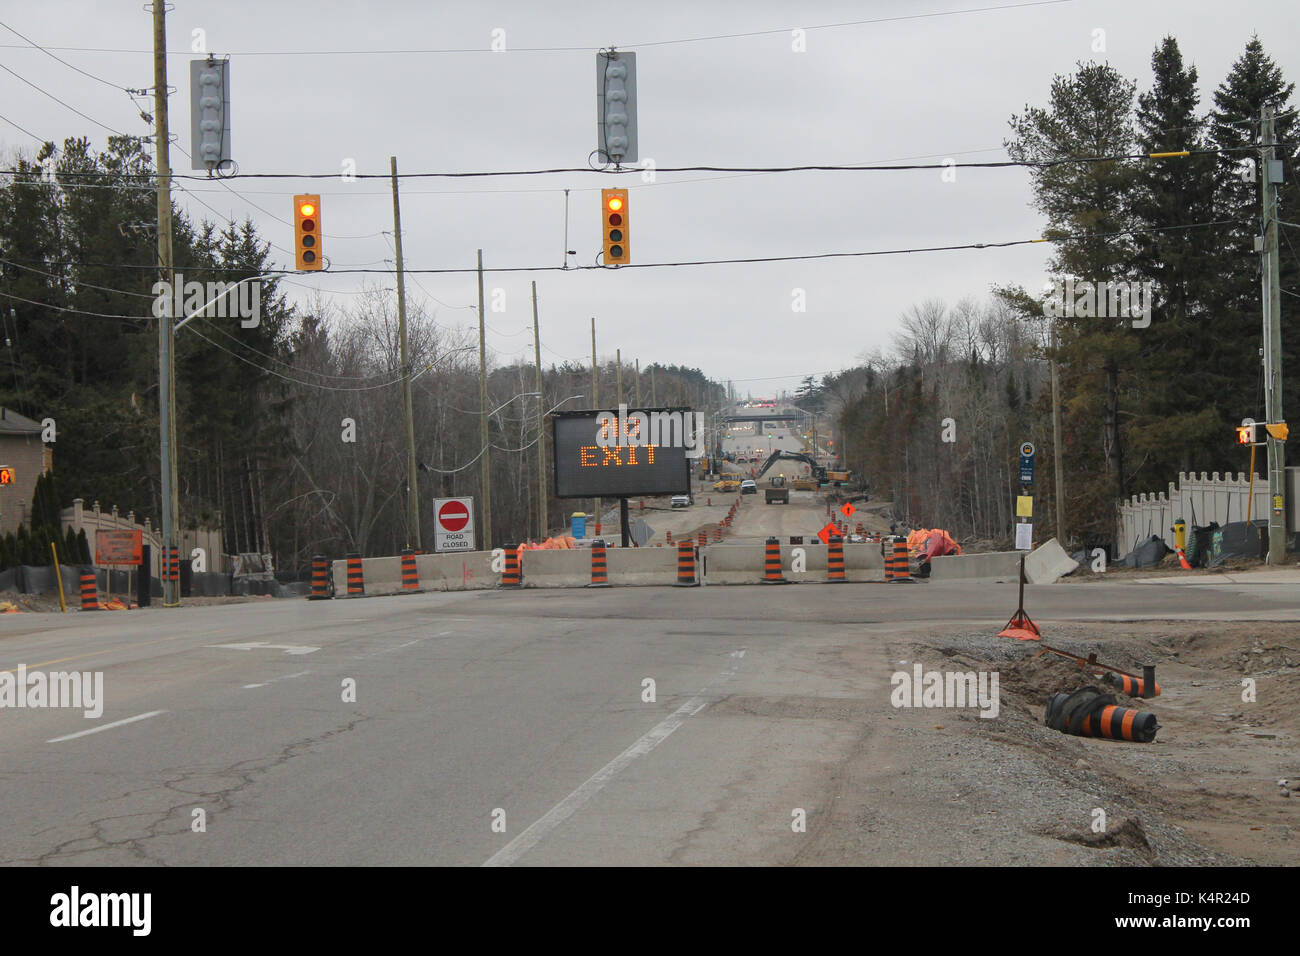 Mapleview Drive, Barrie, Ontario cerrada por obras 'no exit' firmar en el centro. Las tripulaciones trabajando duro para conseguir abrir por 5 semana calendario fecha límite. Foto de stock